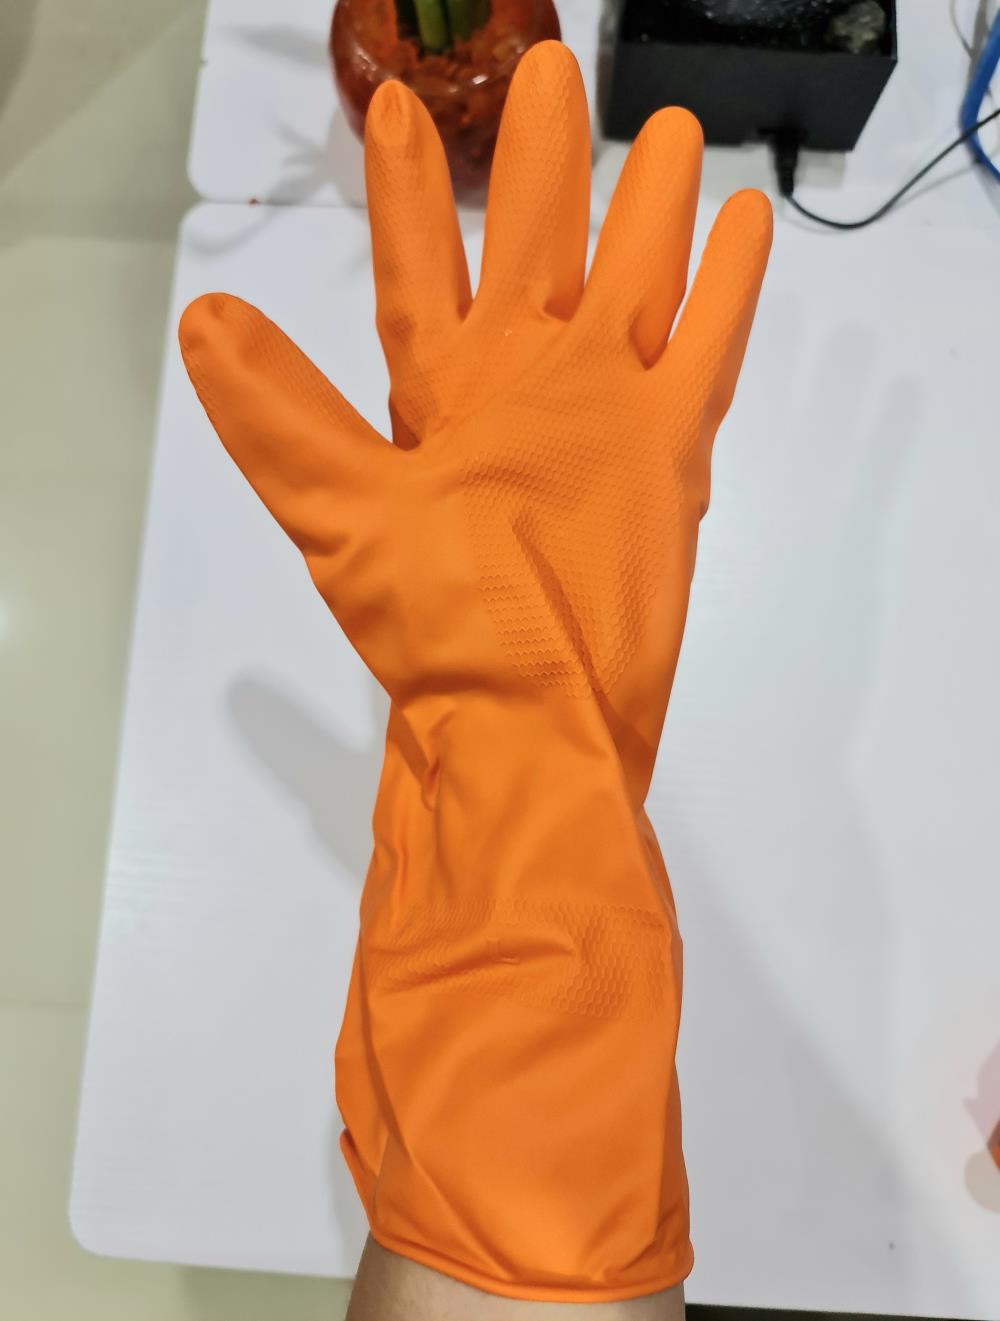 ถุงมือยาง,ถุงมือยางสีส้ม , ถุงมือยาง , ถุงมือยางเอนกประสงค์,,Hardware and Consumable/General Hardware